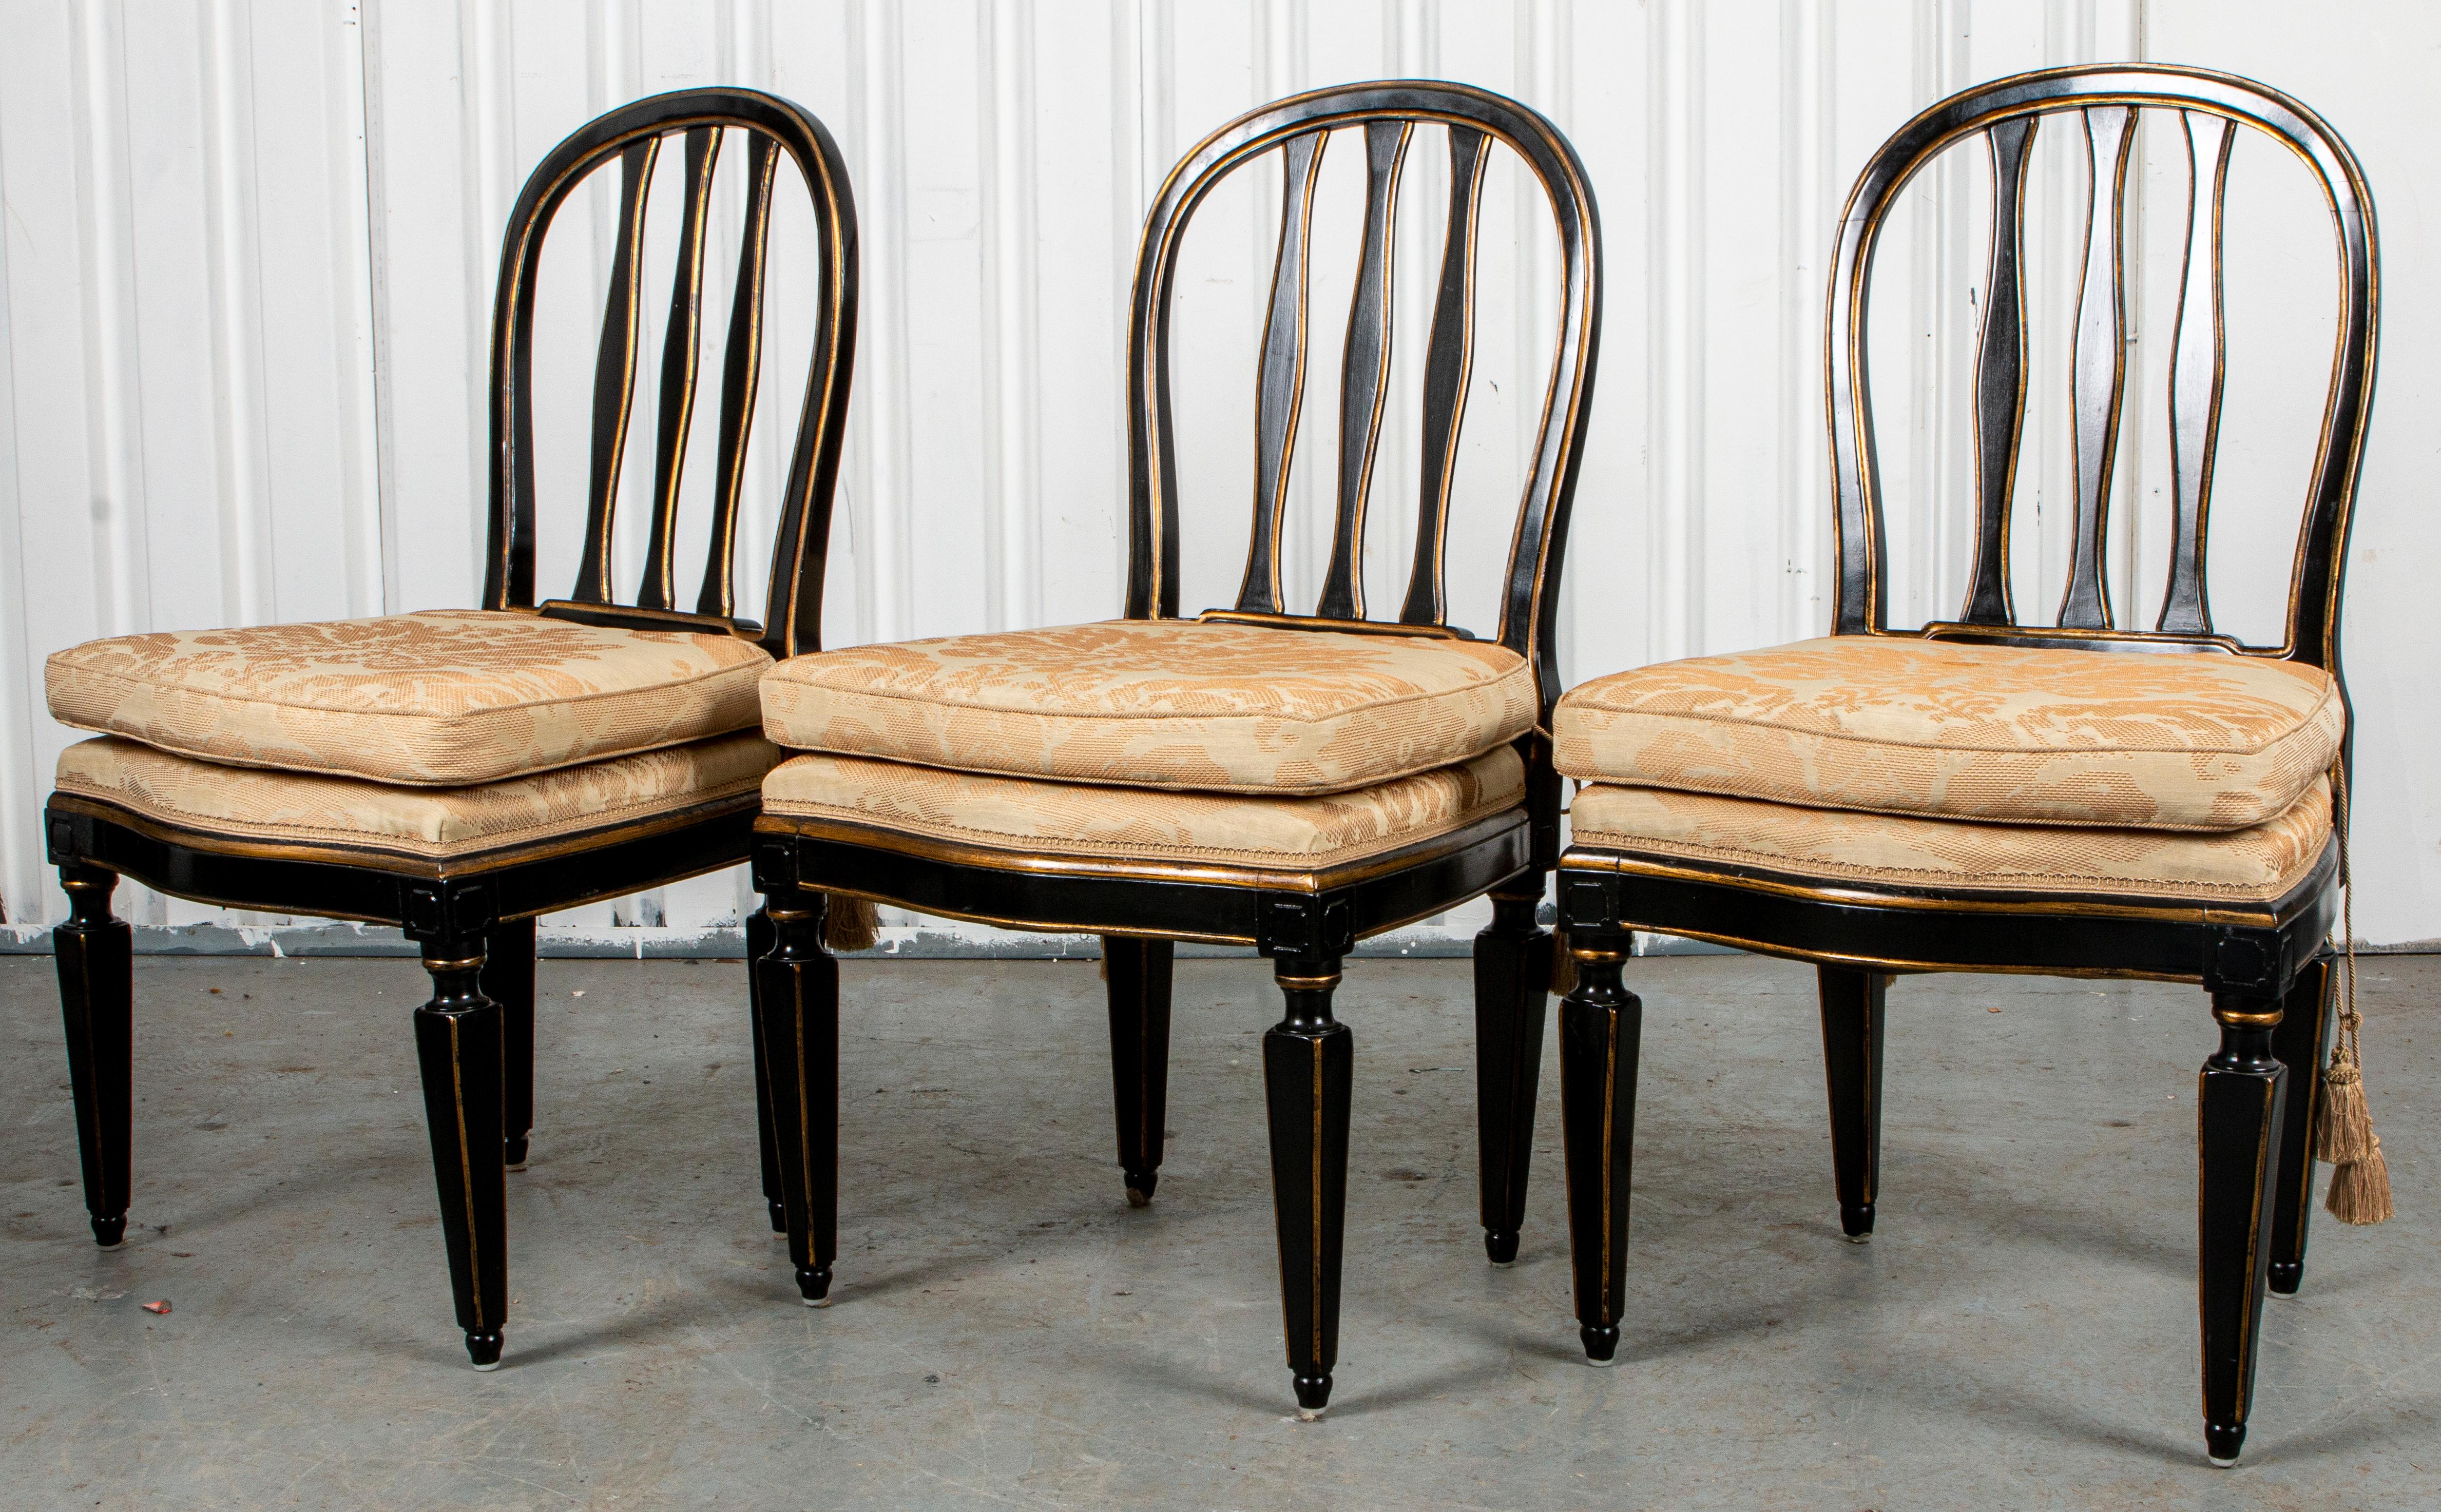 Sechs paketvergoldete, ebonisierte Beistellstühle im Regency-Stil, 20. Jahrhundert, die gewölbte Rückenlehne mit drei zentralen Latten über einem gepolsterten Sitz mit aufgeschnürten Kissen über quadratischen, spitz zulaufenden Beinen. Größe: 38